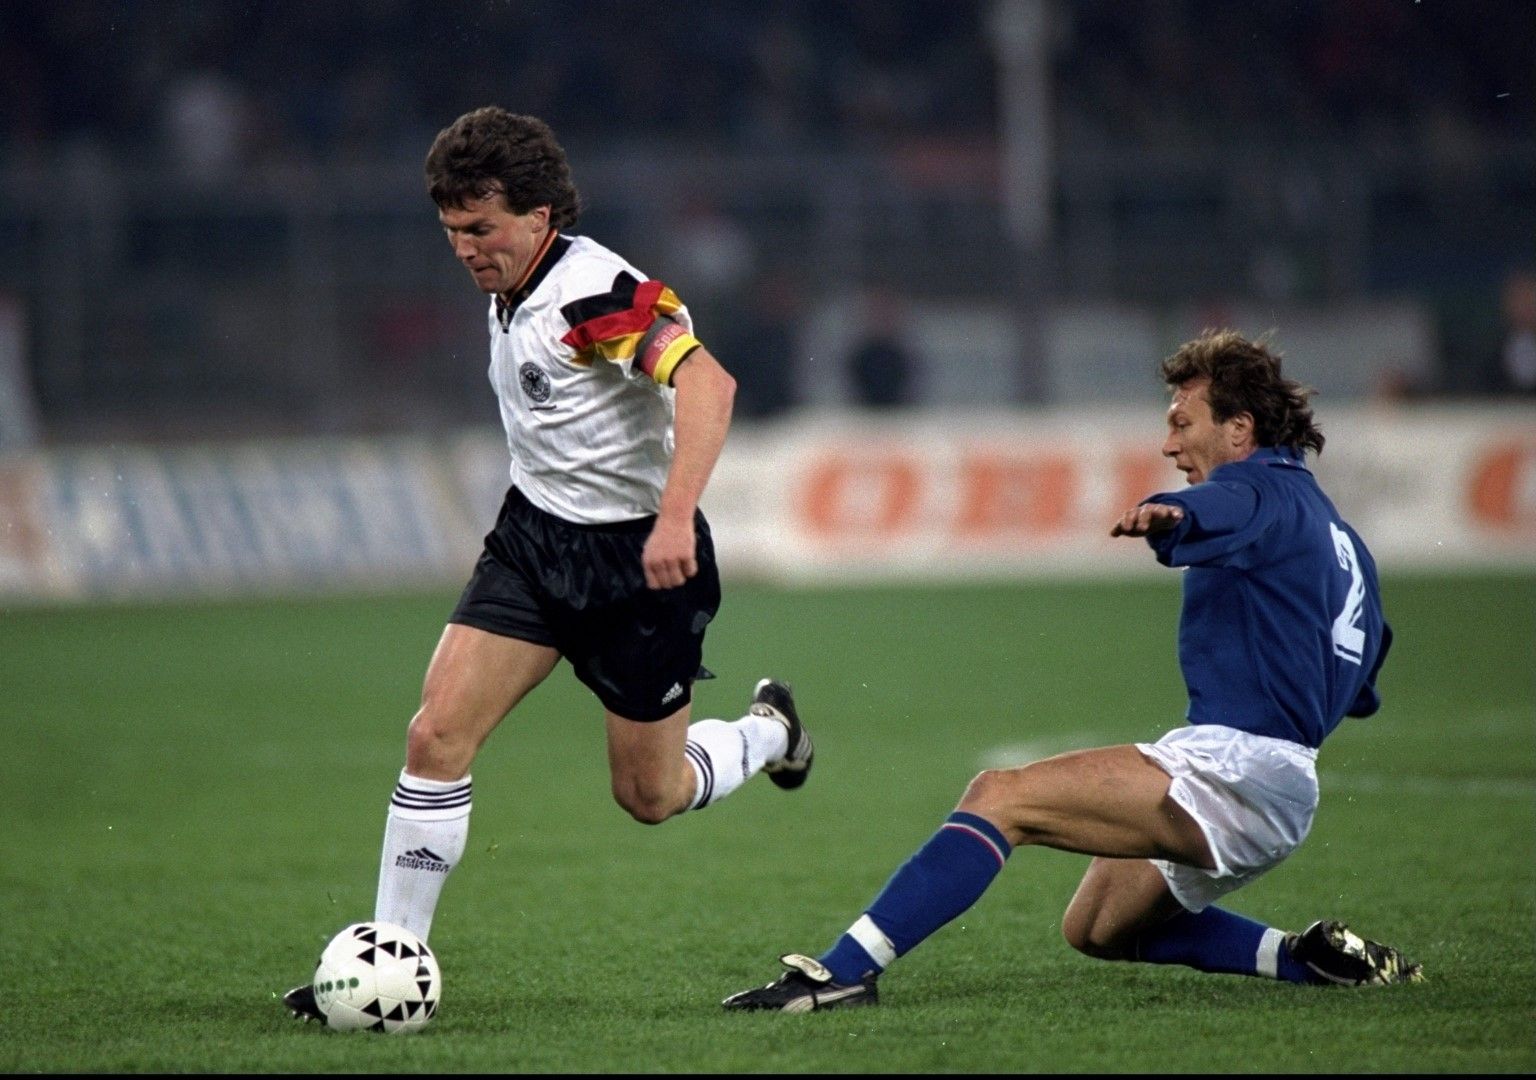 Полузащитник: Лотар Матеус (Германия) Непримирим, еднакво добър като дефанзивен и офанзивен футболист, играещ с двата крака, притежаващ страхотна издръжливост. Машина. Вероятно най-силното впечатление за него остава Мондиал 1990, когато бе лидер на отбора на Германия, спечелил титлата. Така и не успя да вдигне трофея в Шампионската лига, но обяснимо е считан за един от най-силните халфове в историята.